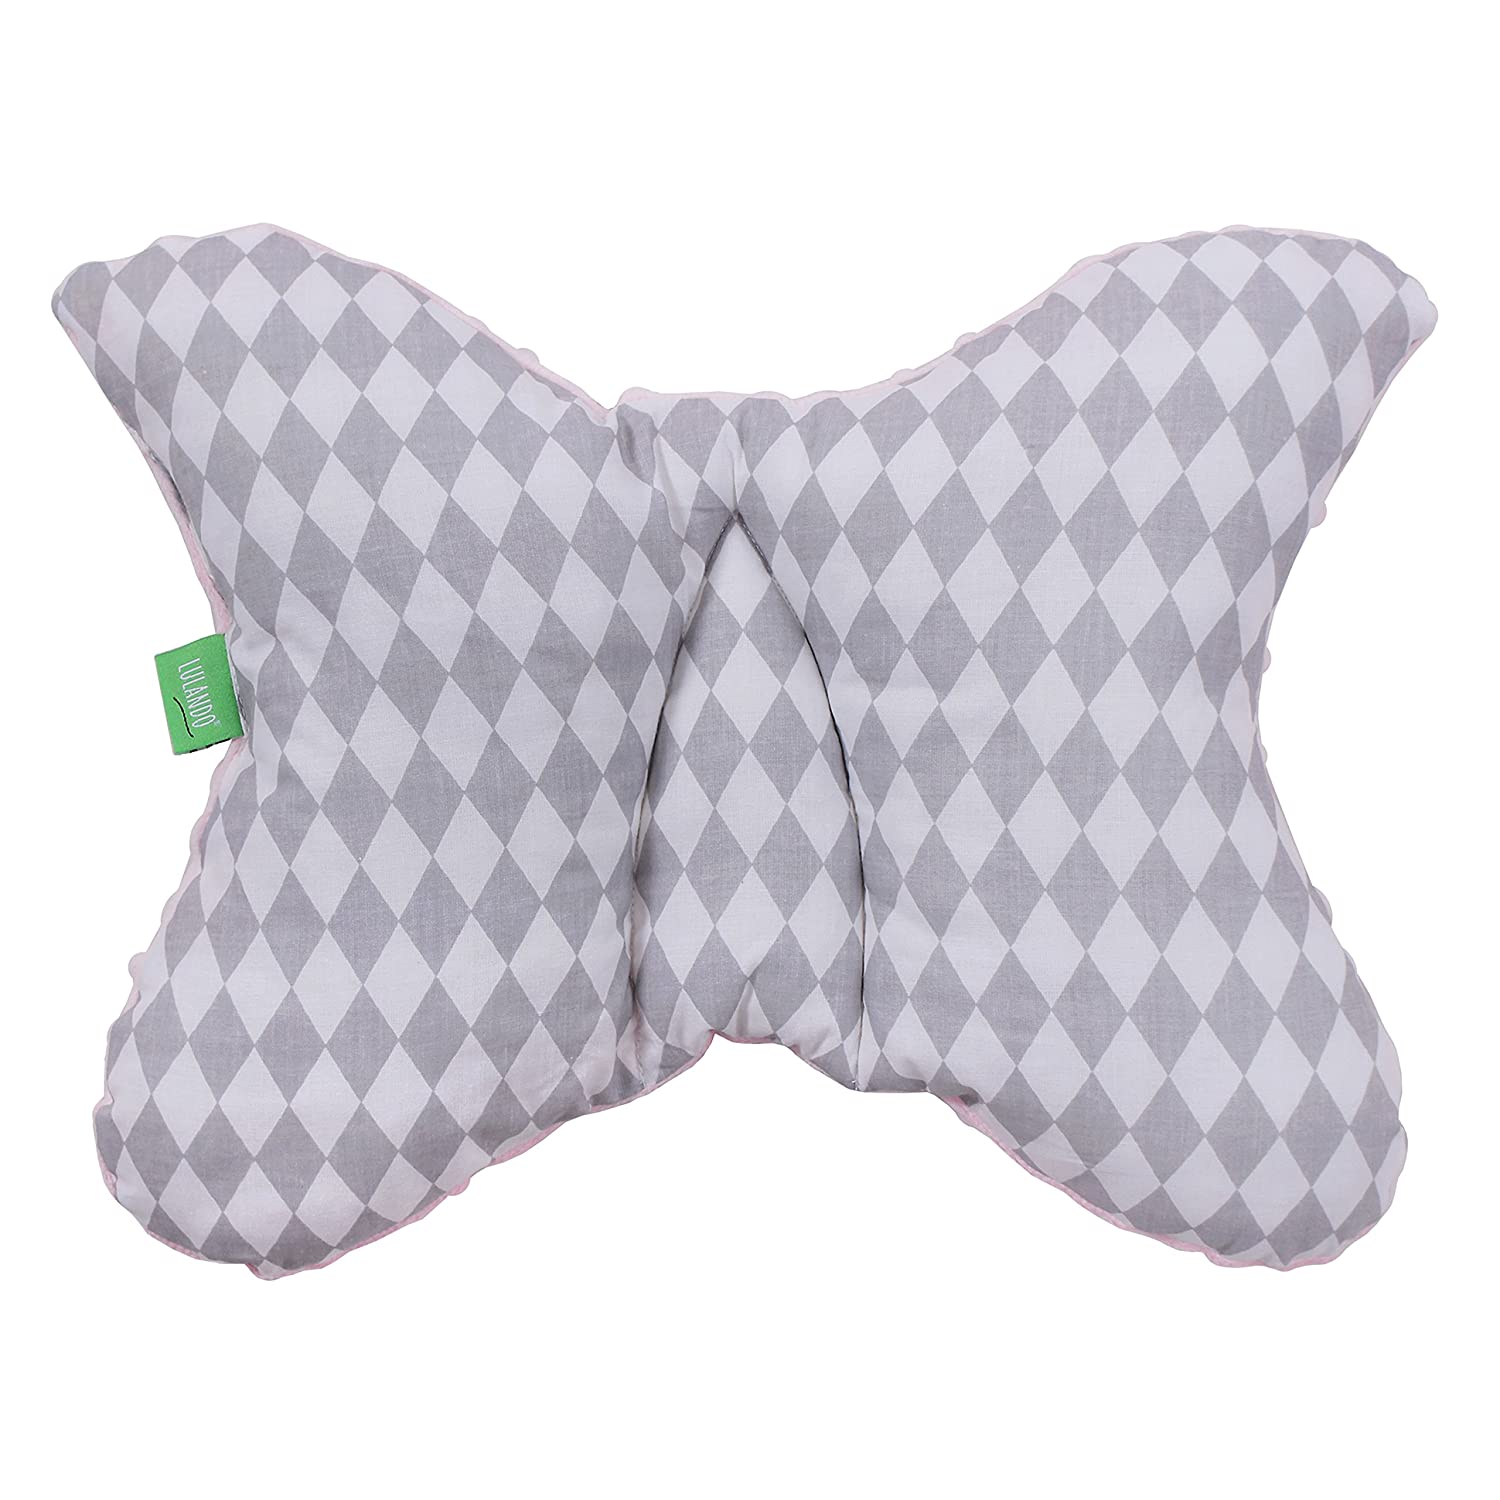 Lulando Minky Nursing And Nursing Pillow Neck Pillow (55 X 42 Cm) For Babie